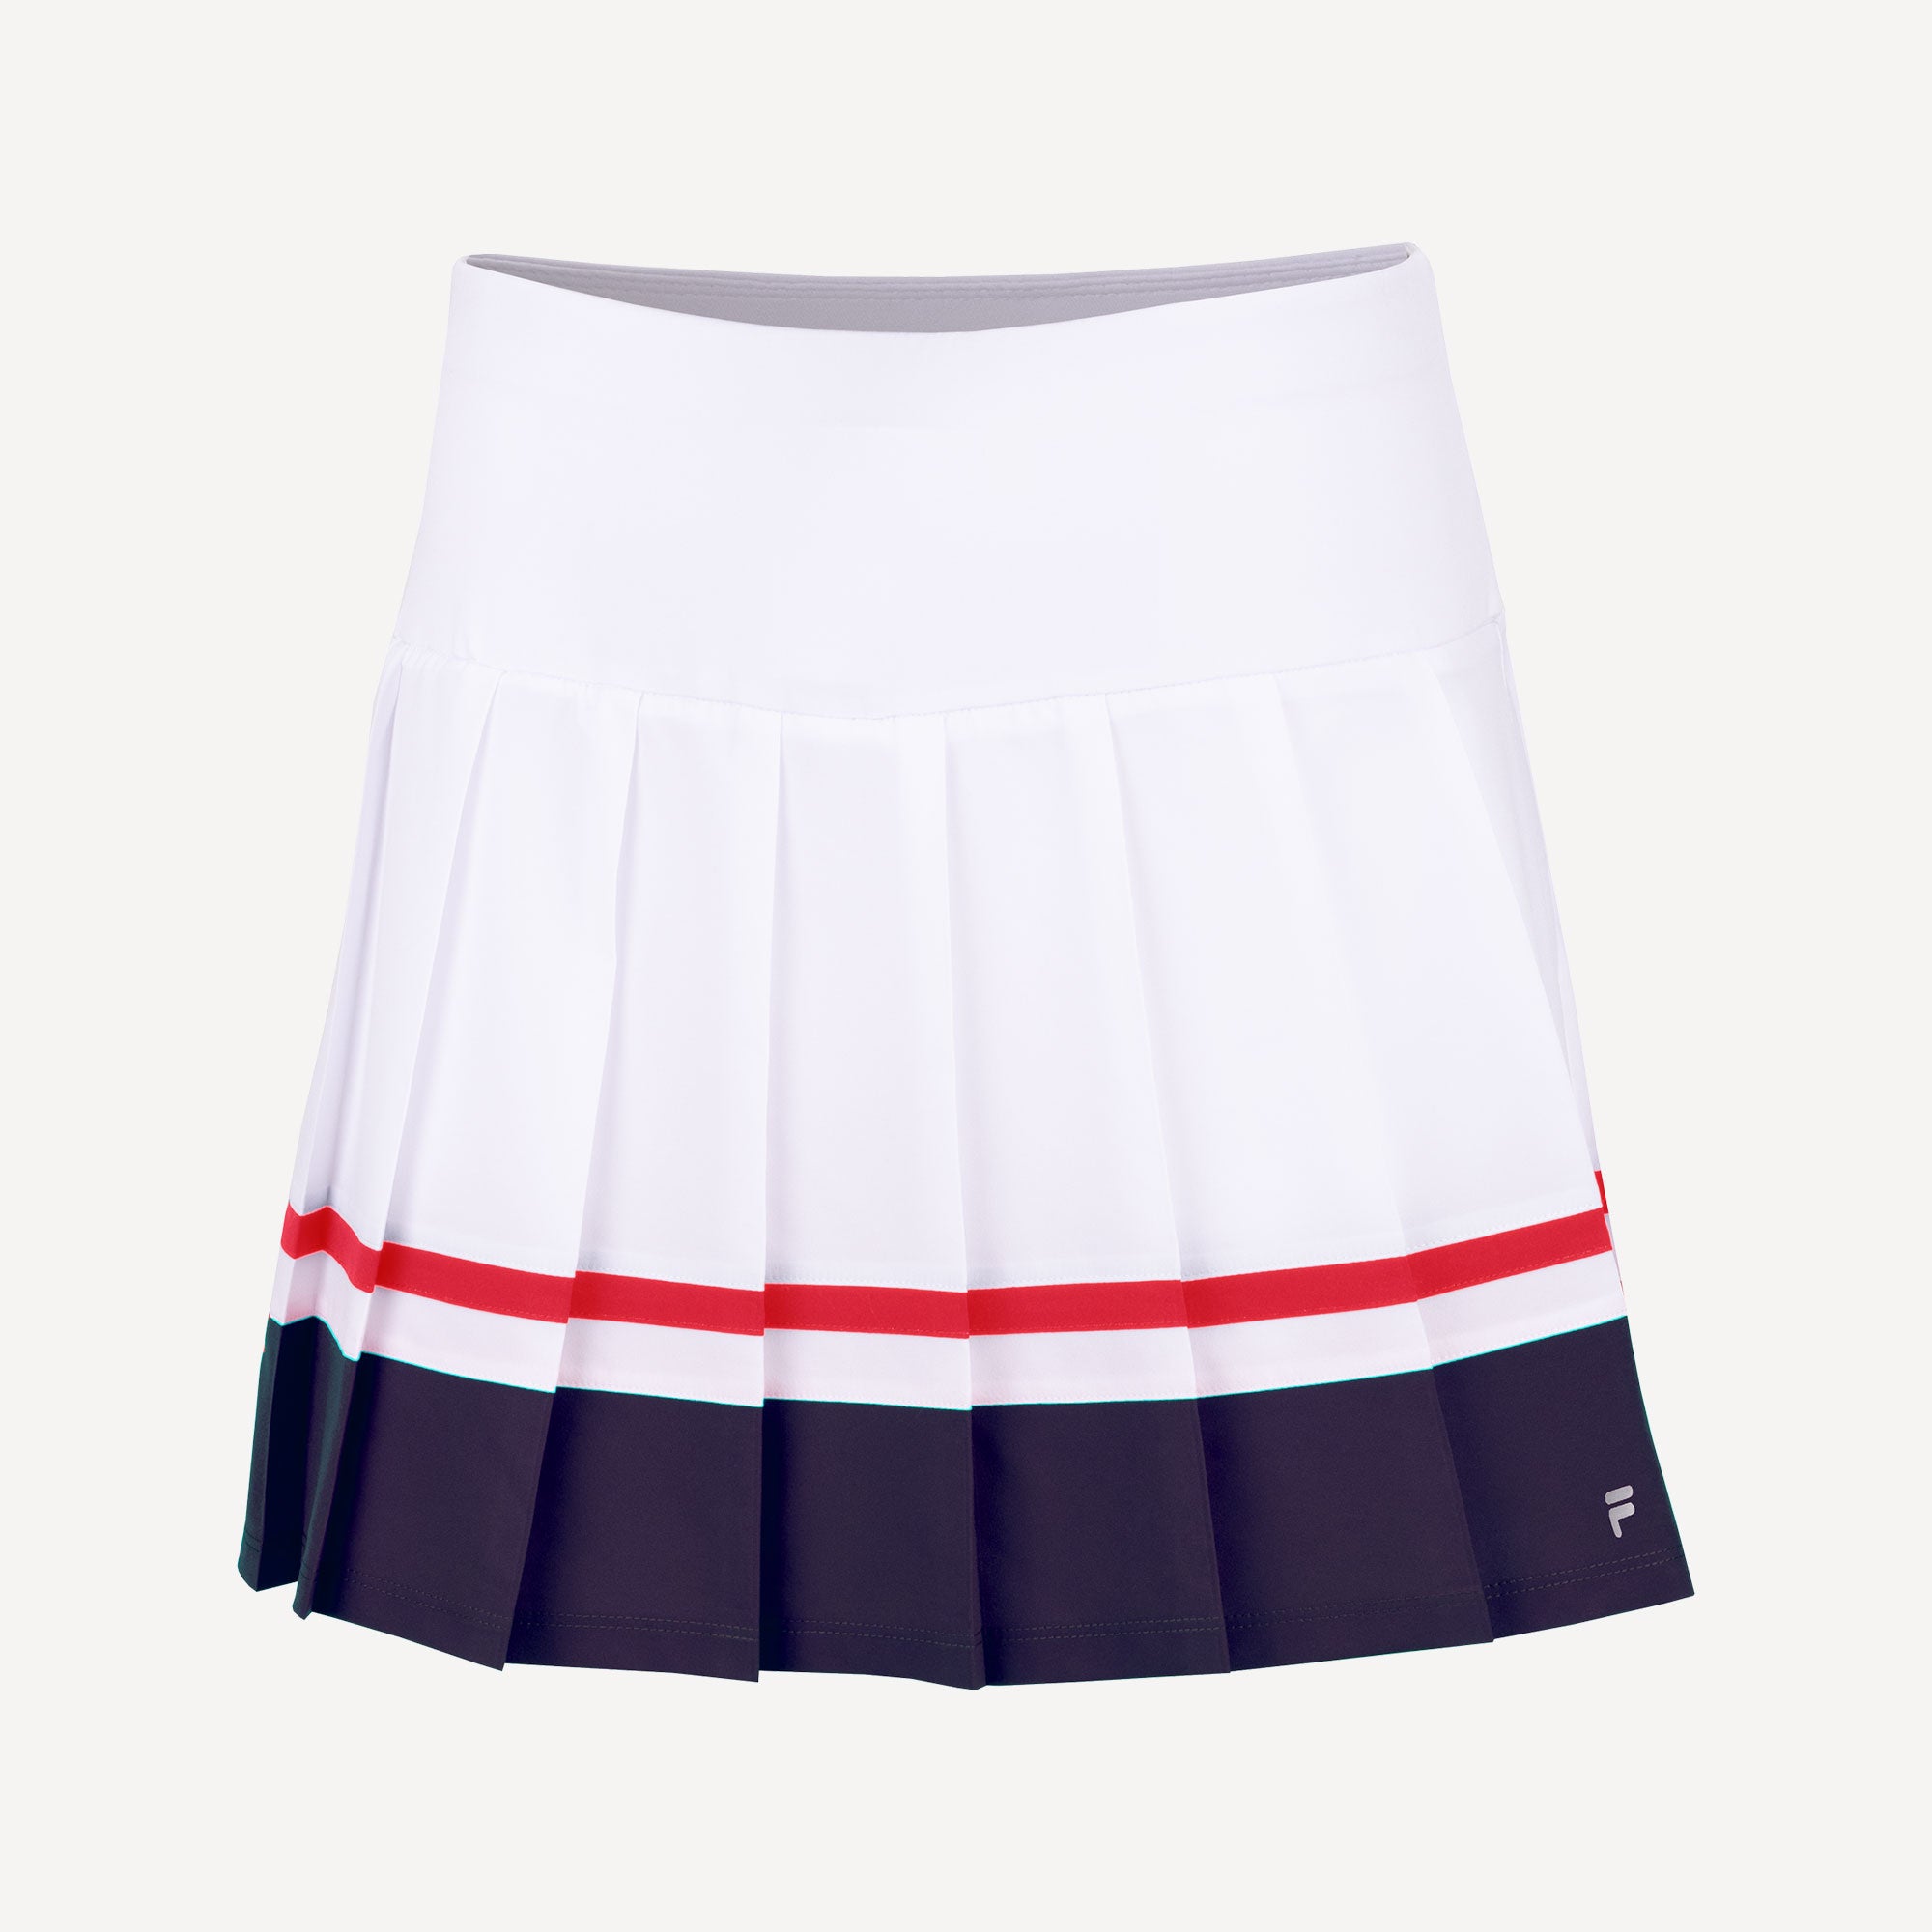 Fila Sabine Women's Tennis Skort - White (1)